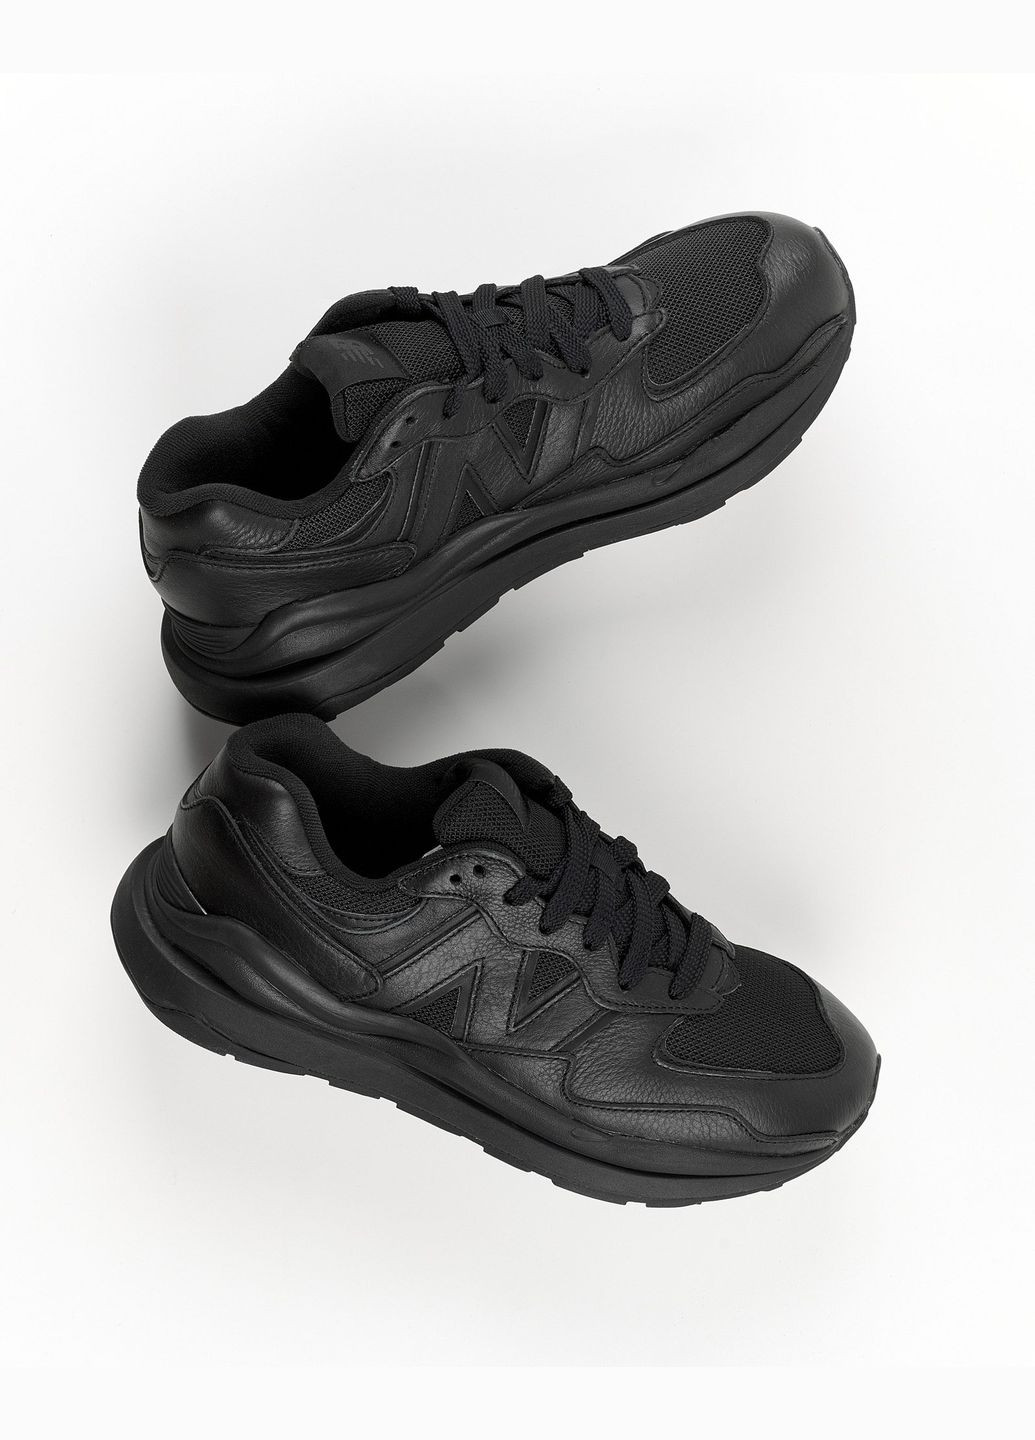 Чорні всесезон кросівки чоловічі 5740 m5740ll весна-осінь шкіра текстиль чорні New Balance